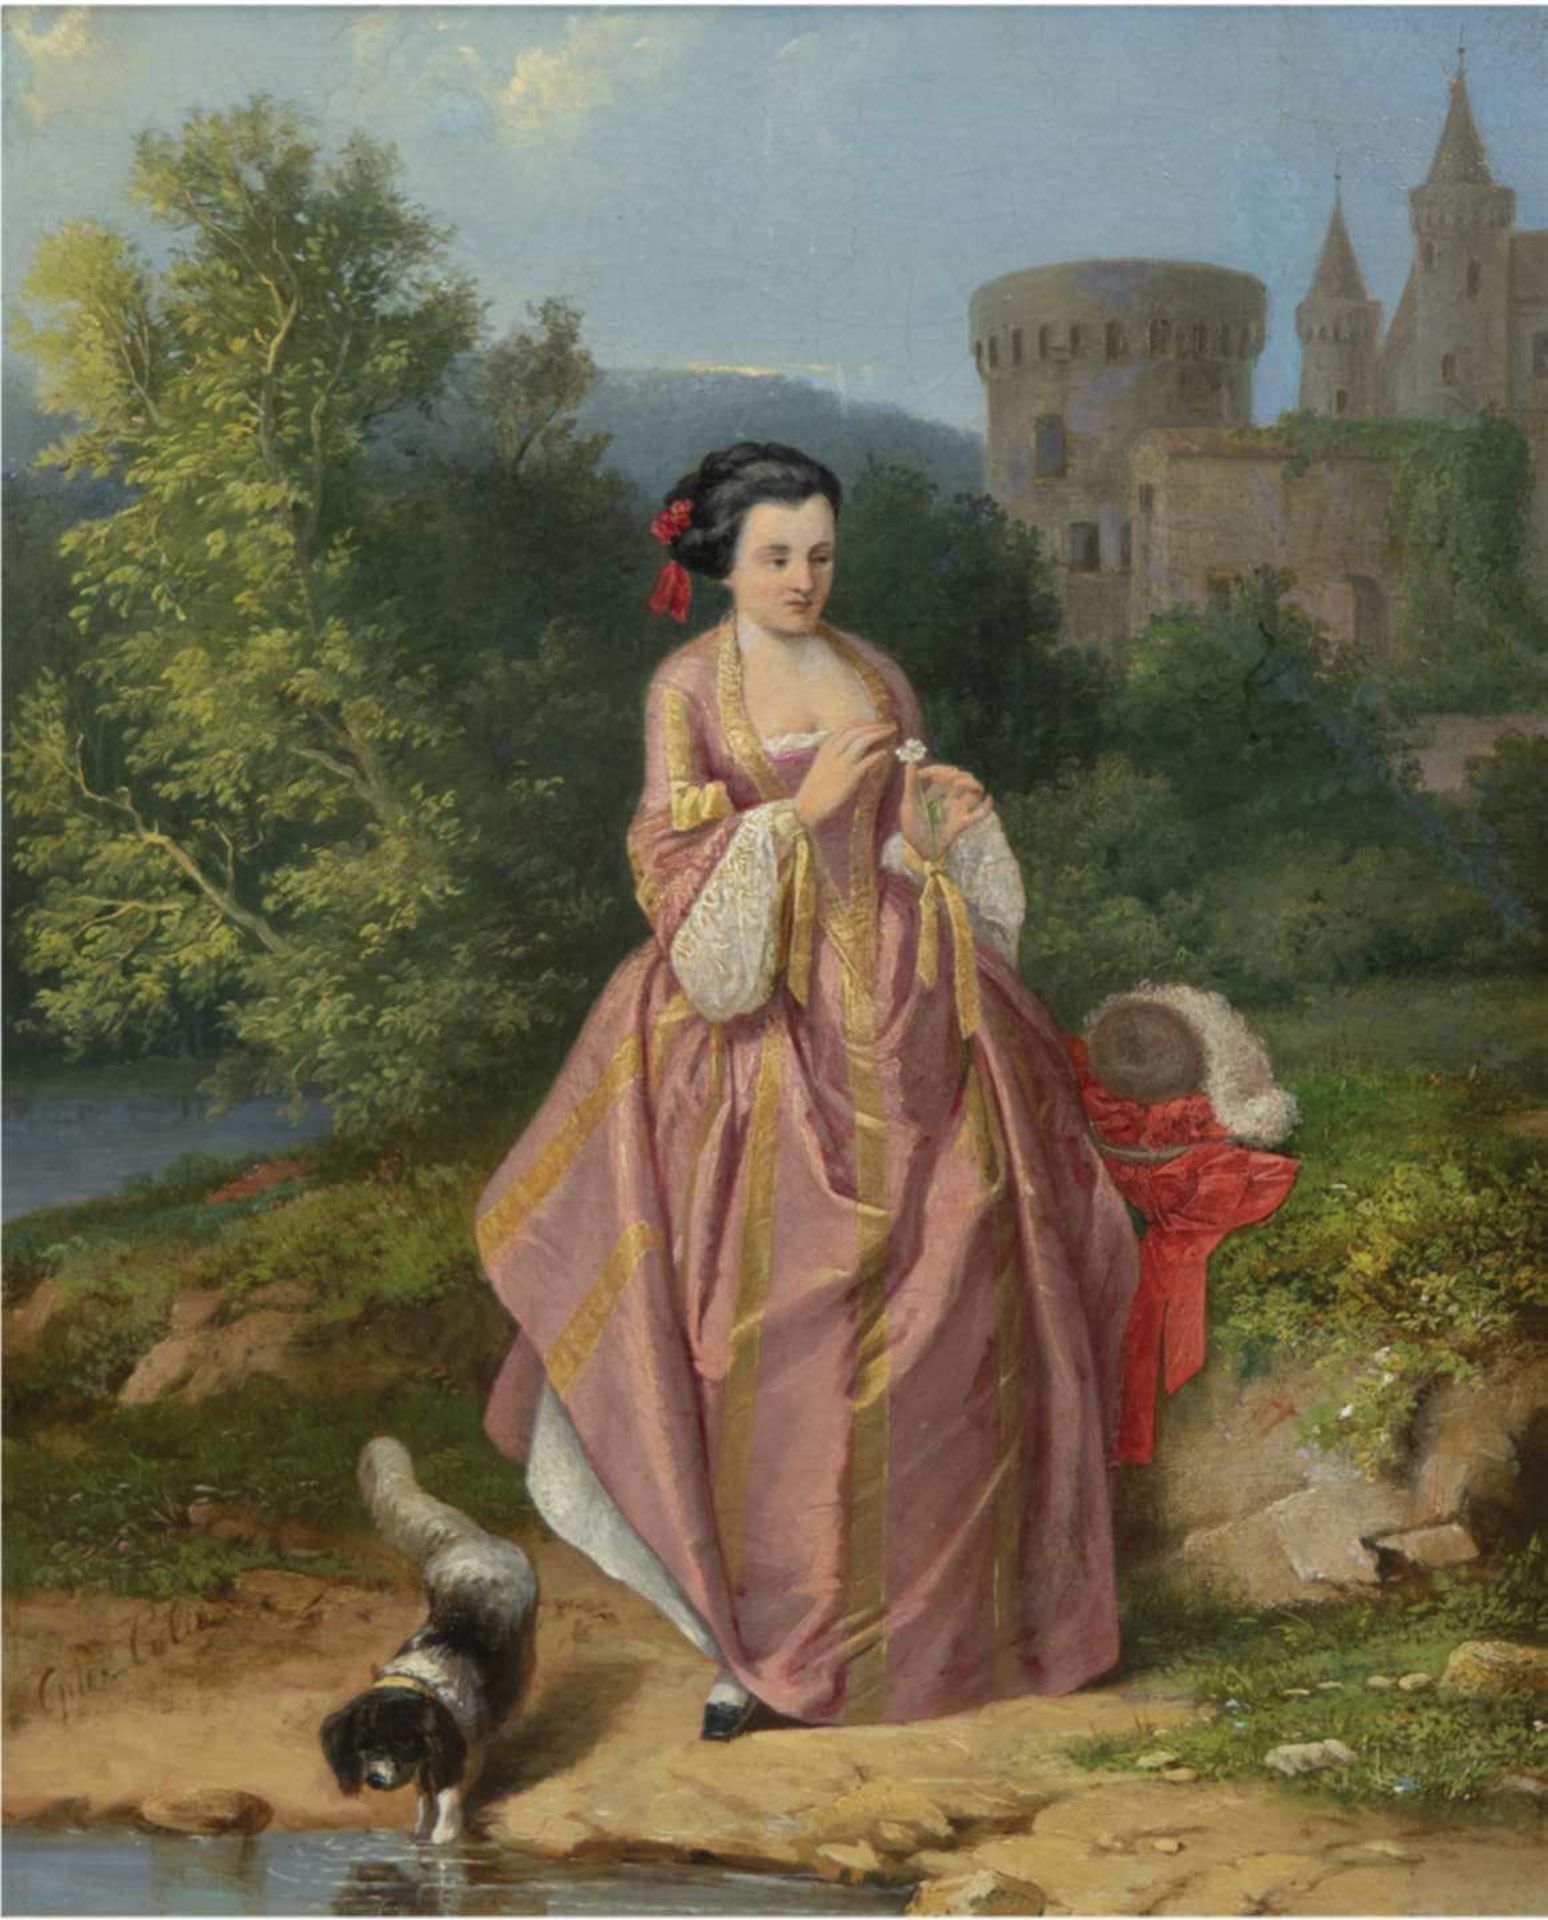 Französischer Maler 19. Jh. "Burgfräulein mit Hund am See", Öl/Holz, sign. u.l. "Colin",42